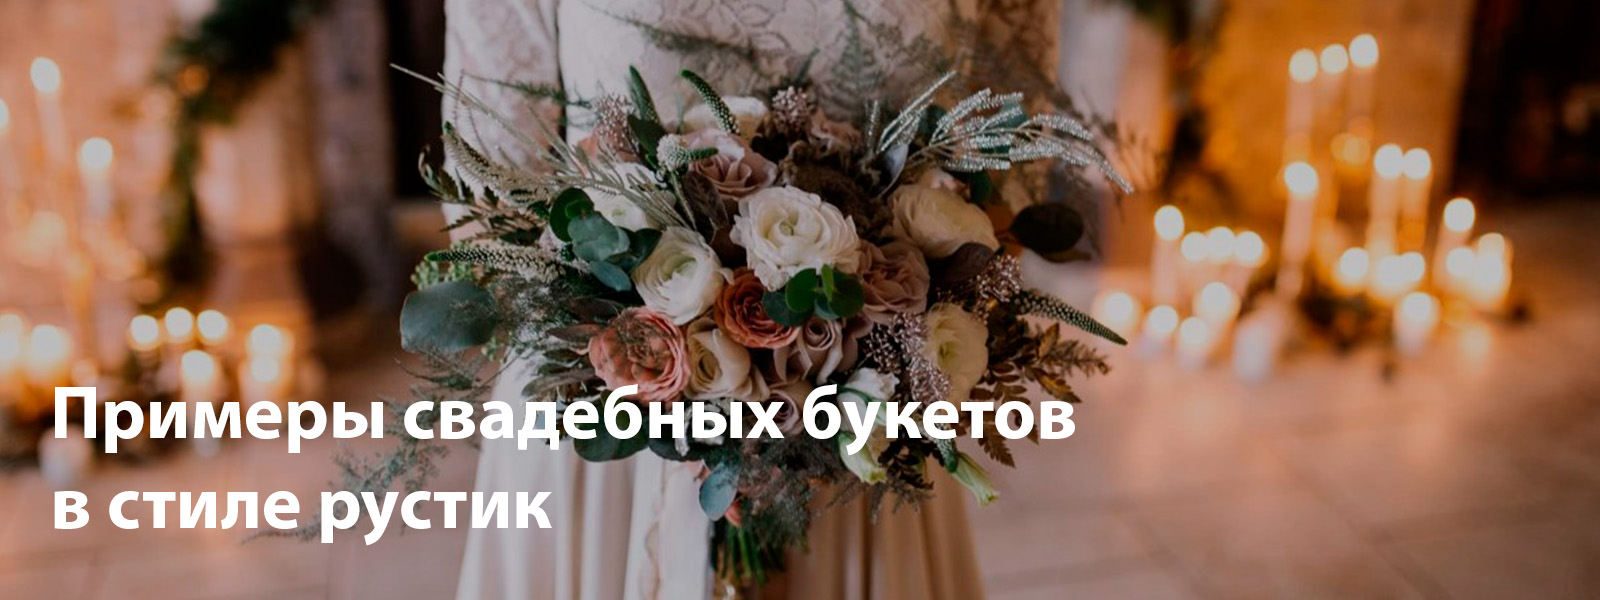 Примеры свадебных букетов в стиле рустик